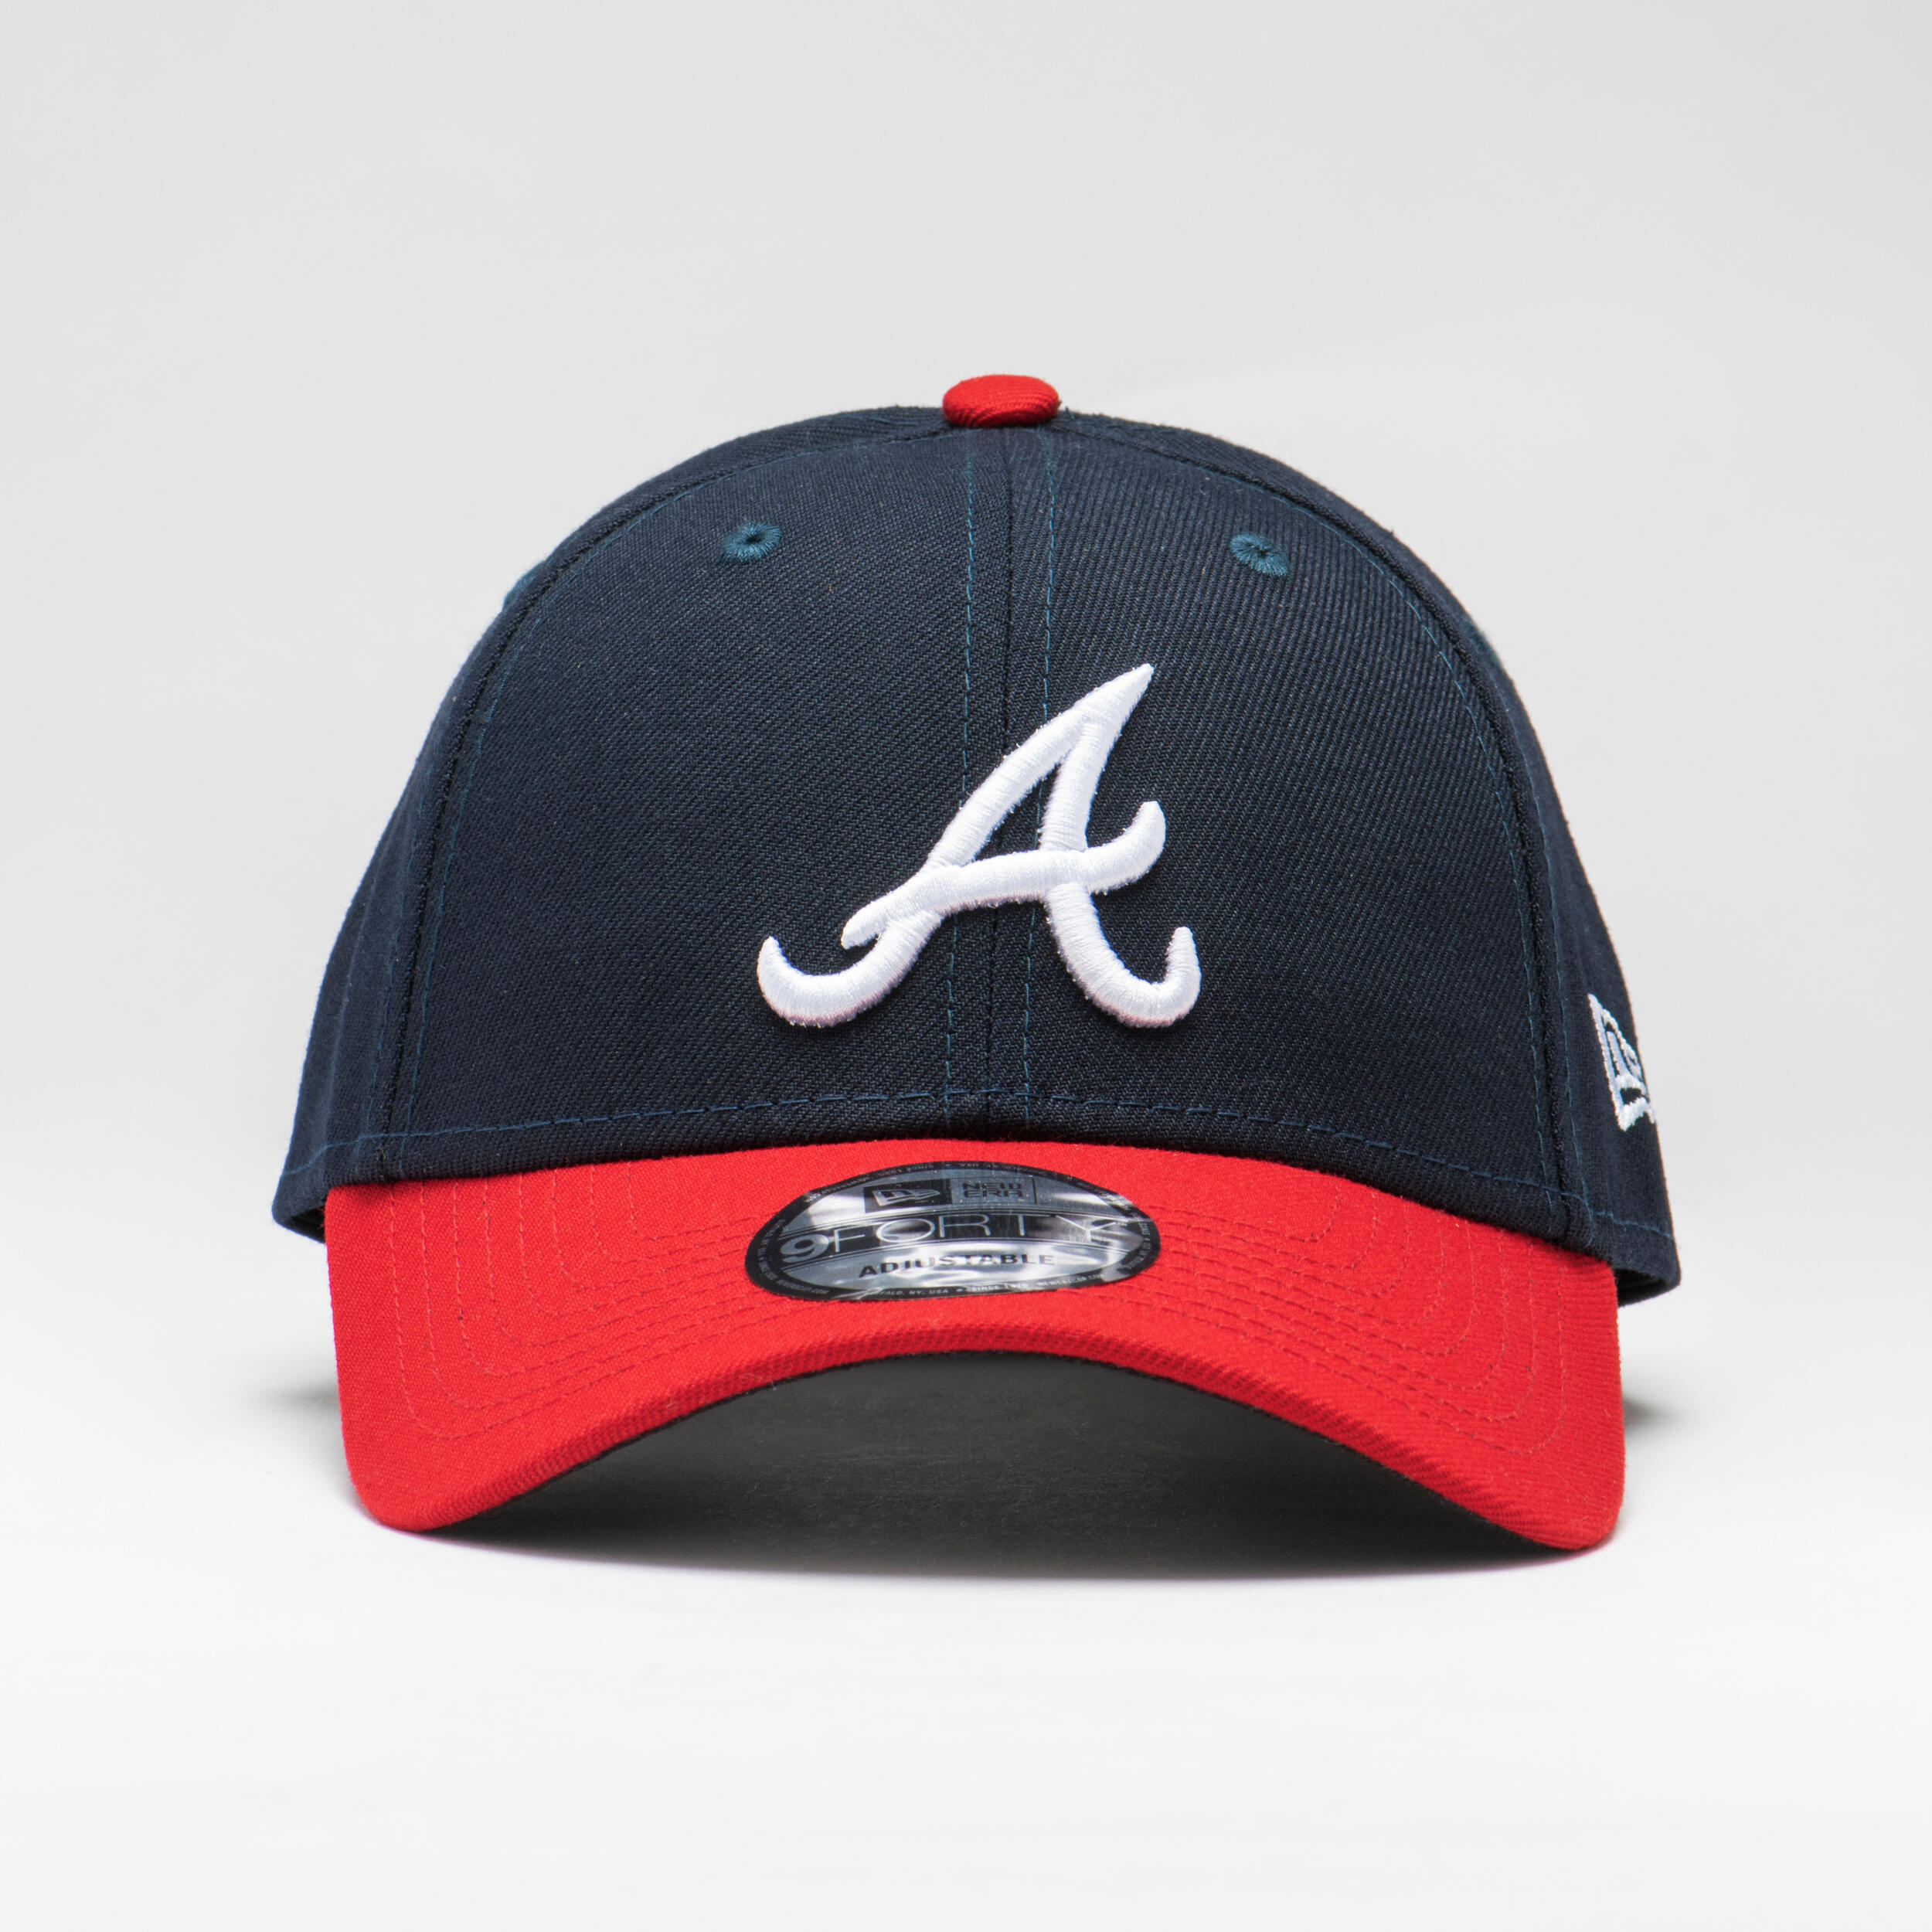 New Era Atlanta Braves MLB Pinstripe 9FIFTY Snapback Hat JD Sports